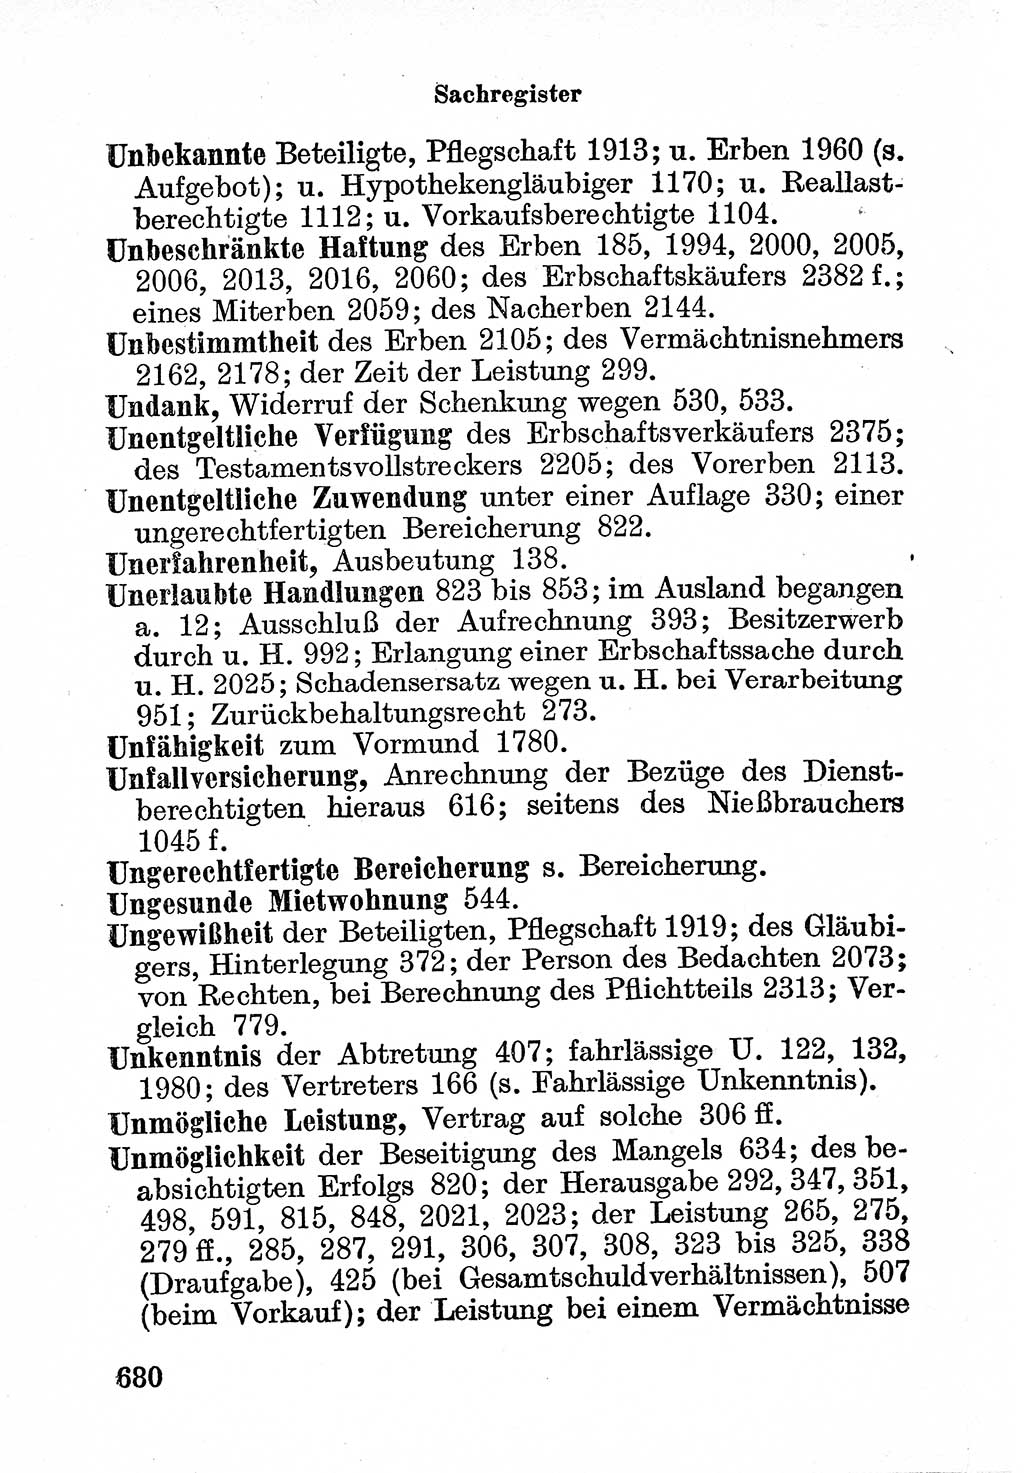 Bürgerliches Gesetzbuch (BGB) nebst wichtigen Nebengesetzen [Deutsche Demokratische Republik (DDR)] 1956, Seite 680 (BGB Nebenges. DDR 1956, S. 680)